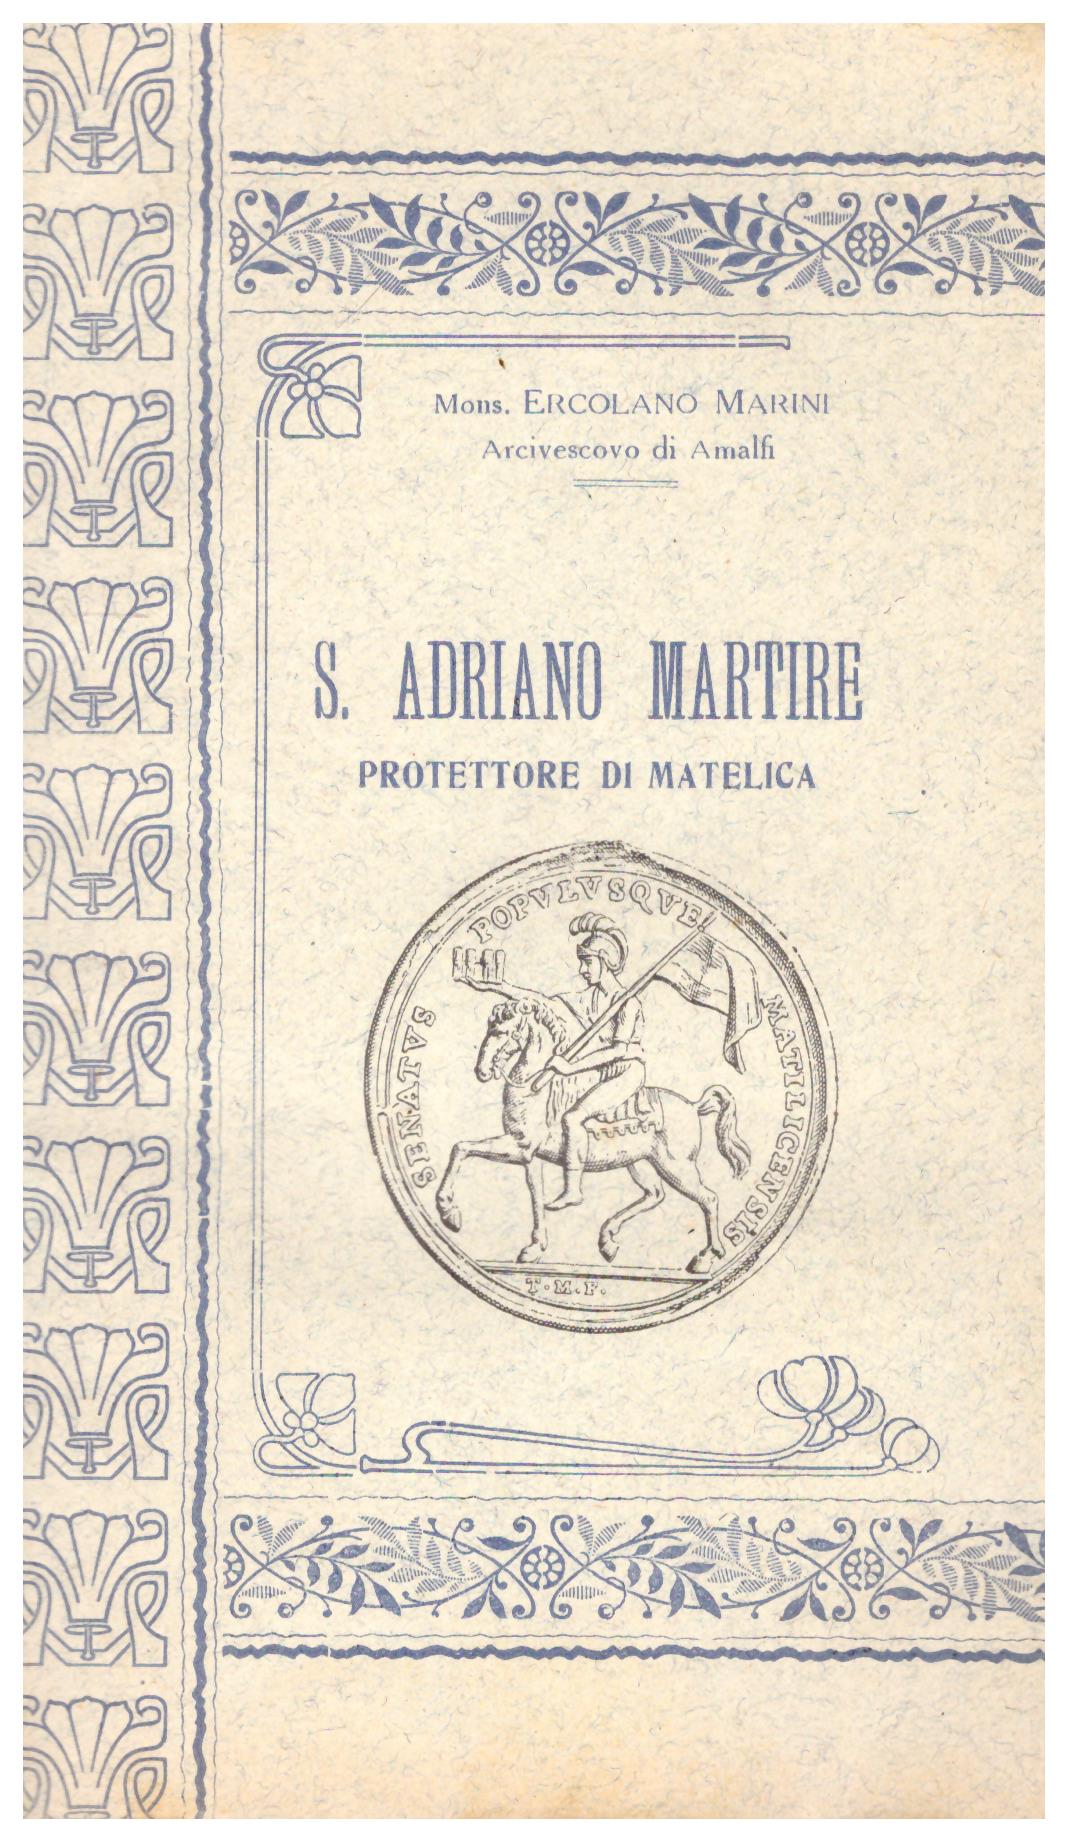 Titolo: S. Adriano martire protettore di Matelica    Autore: Mons. Ercolano Marini    Editore: Prem. Tip. Ed. L. Romagnoli-Castelplanio 1921